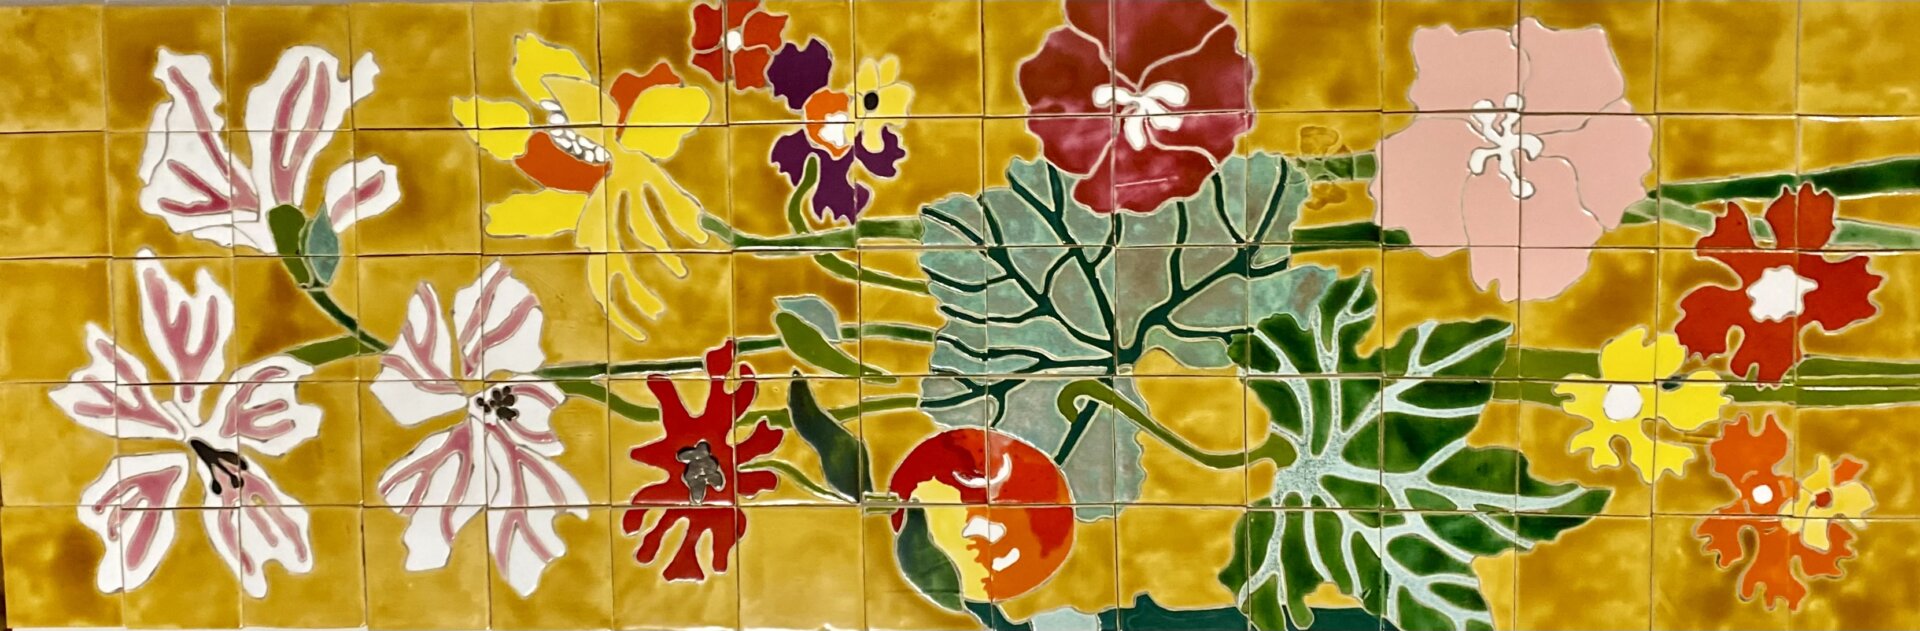 panneau floral Art-Nouveau dans les tons miel avec feuillages et fruits colorés pour une décoration extérieure de maison